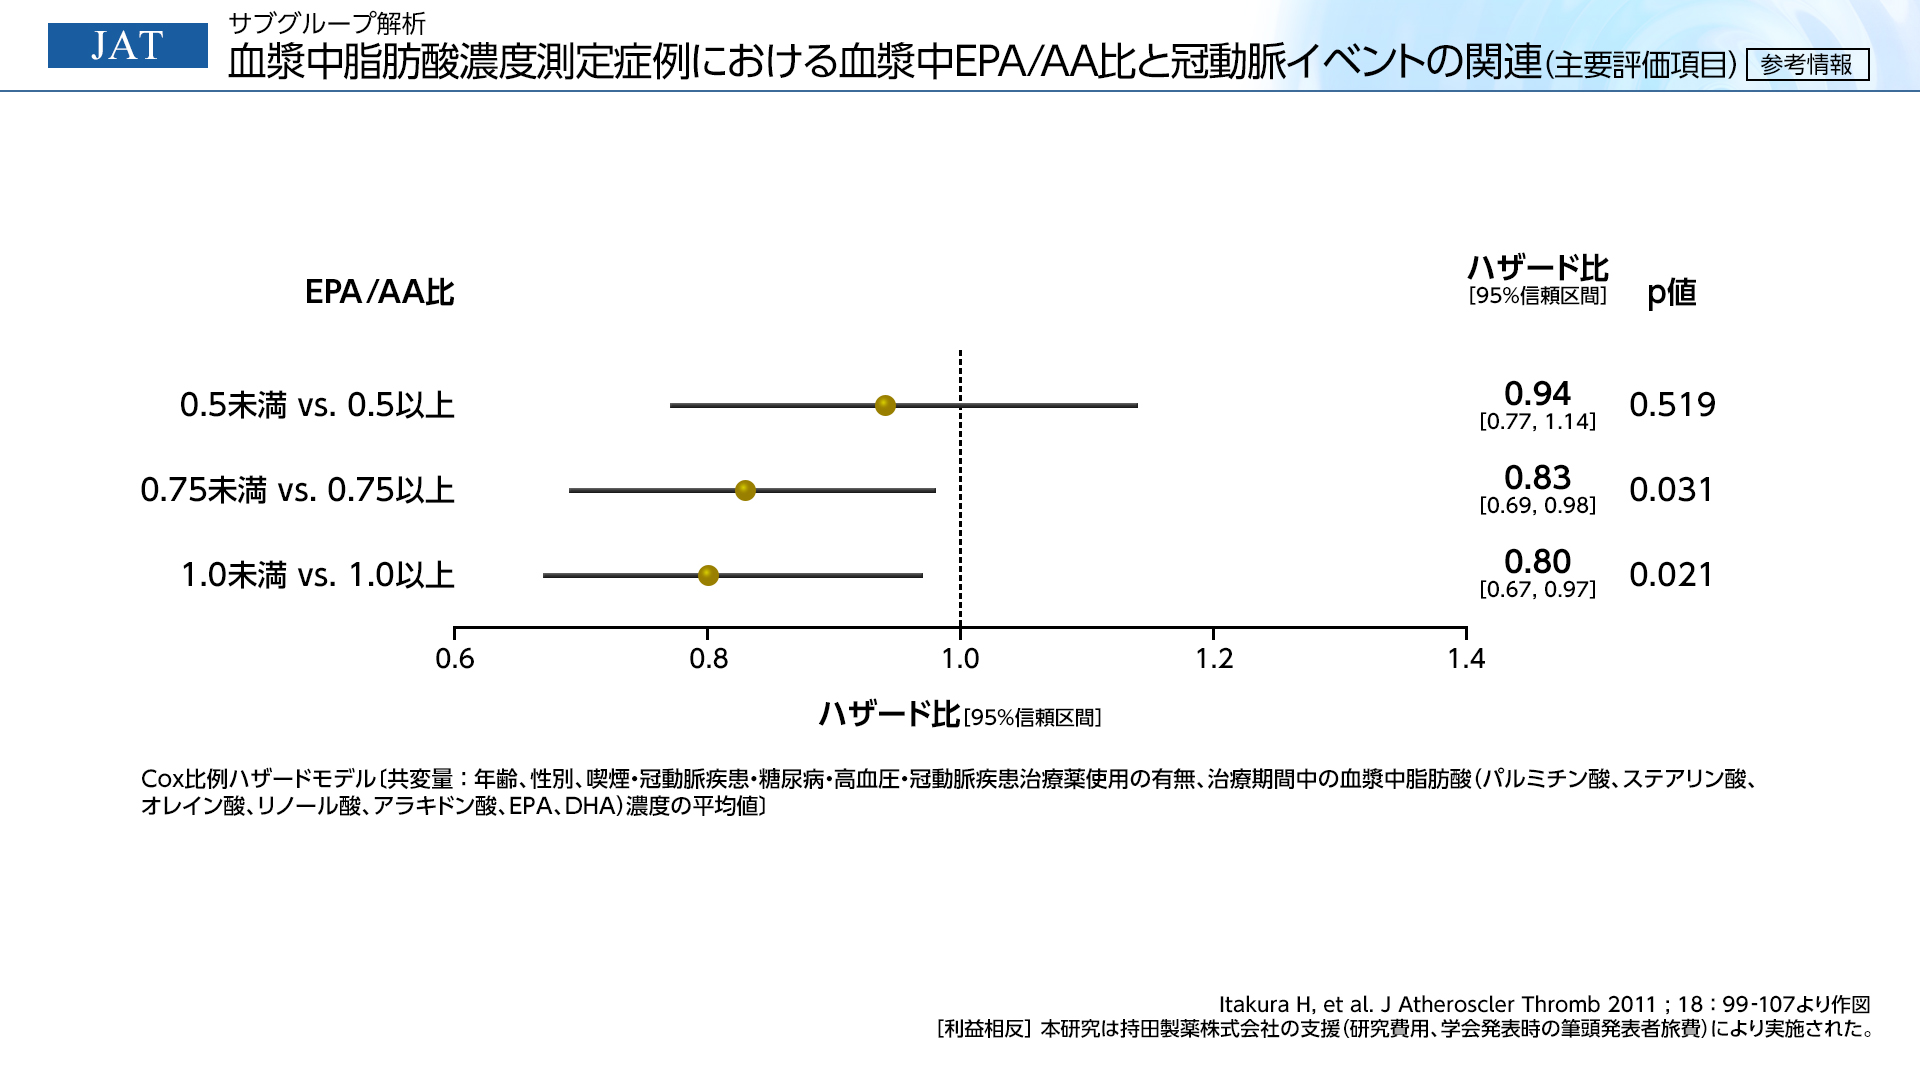 サブグループ解析 血漿中脂肪酸濃度測定症例における血漿中EPA/AA比と冠動脈イベントの関連（主要評価項目）参考情報